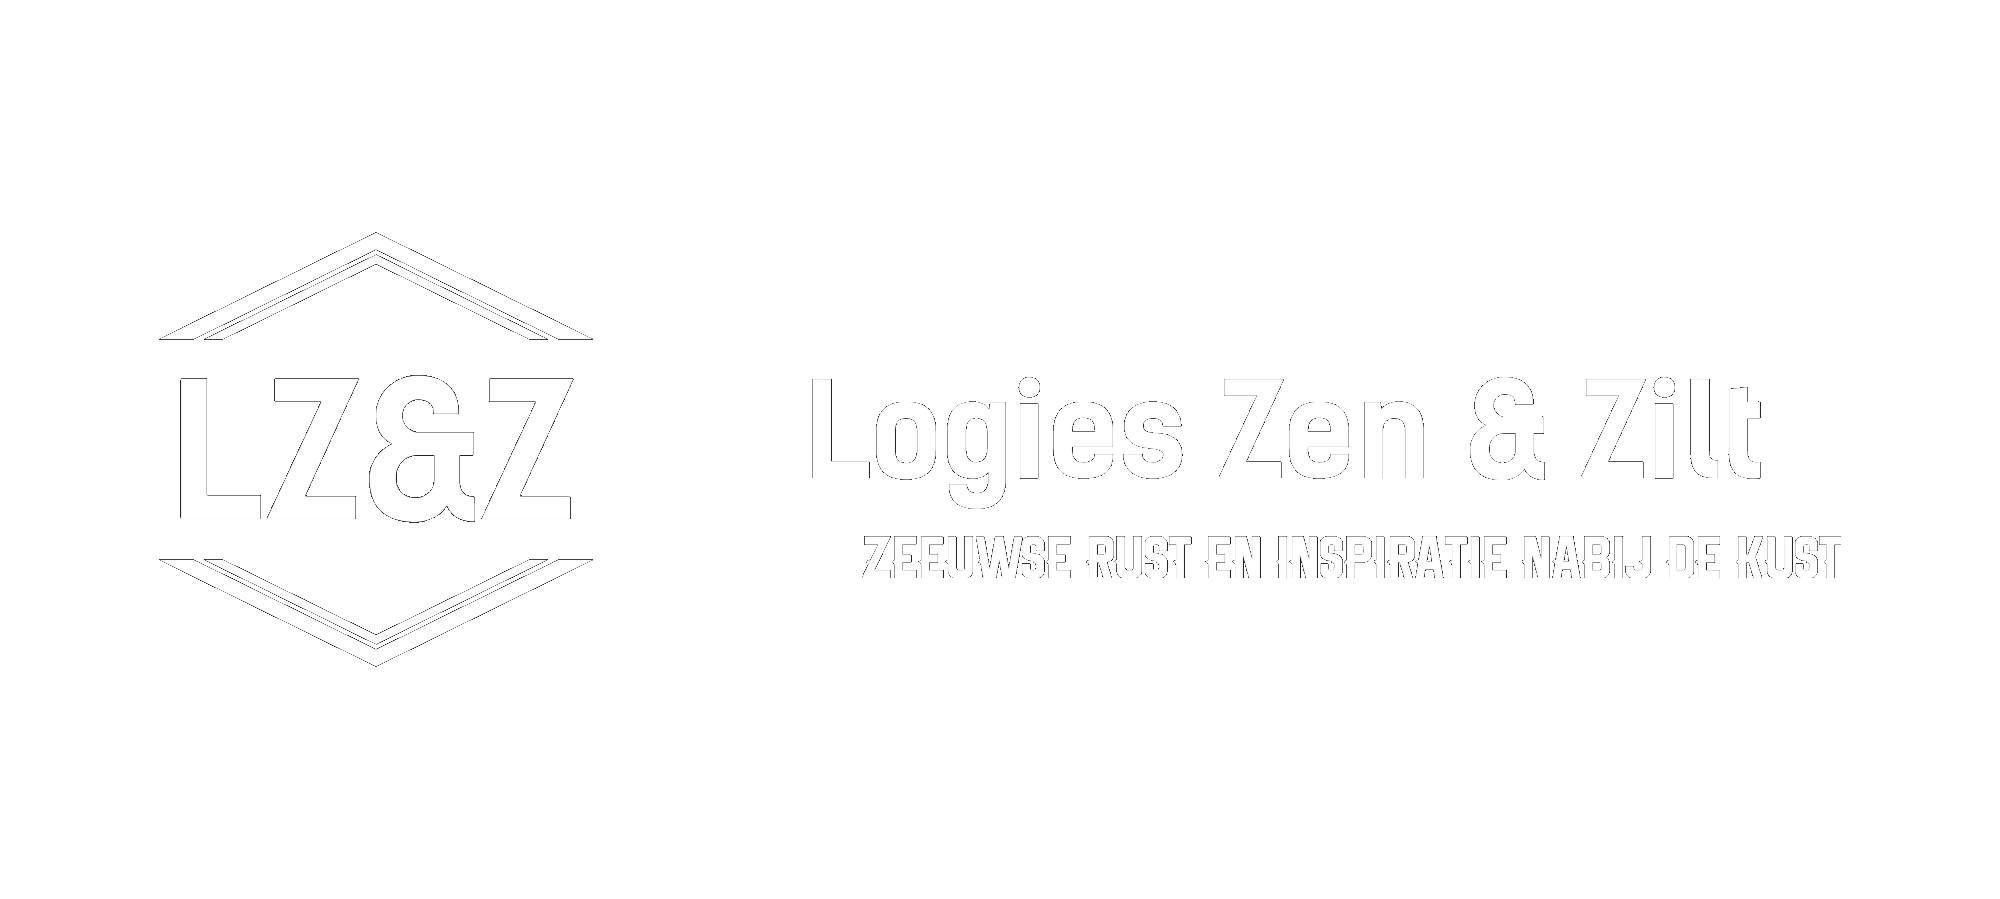 Logies Zen & Zilt